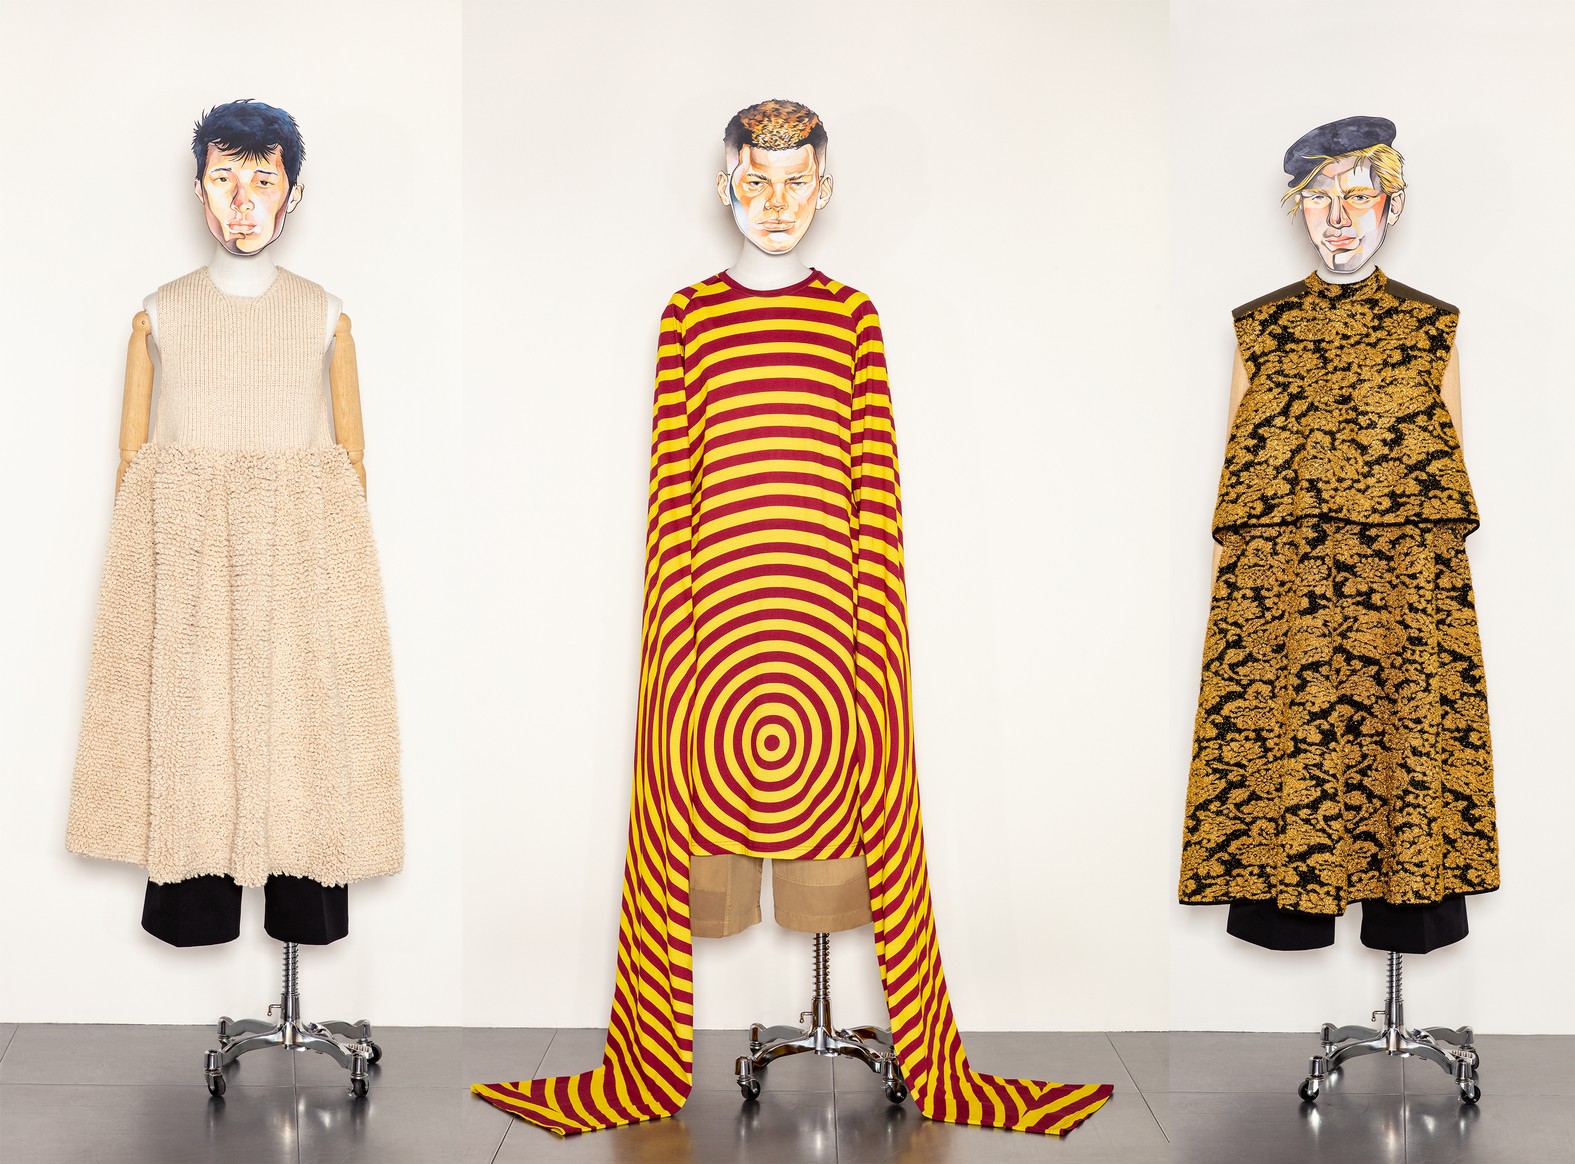 Маски художников, мужские платья и цветочные принты — в новой мужской коллекции J.W. Anderson 